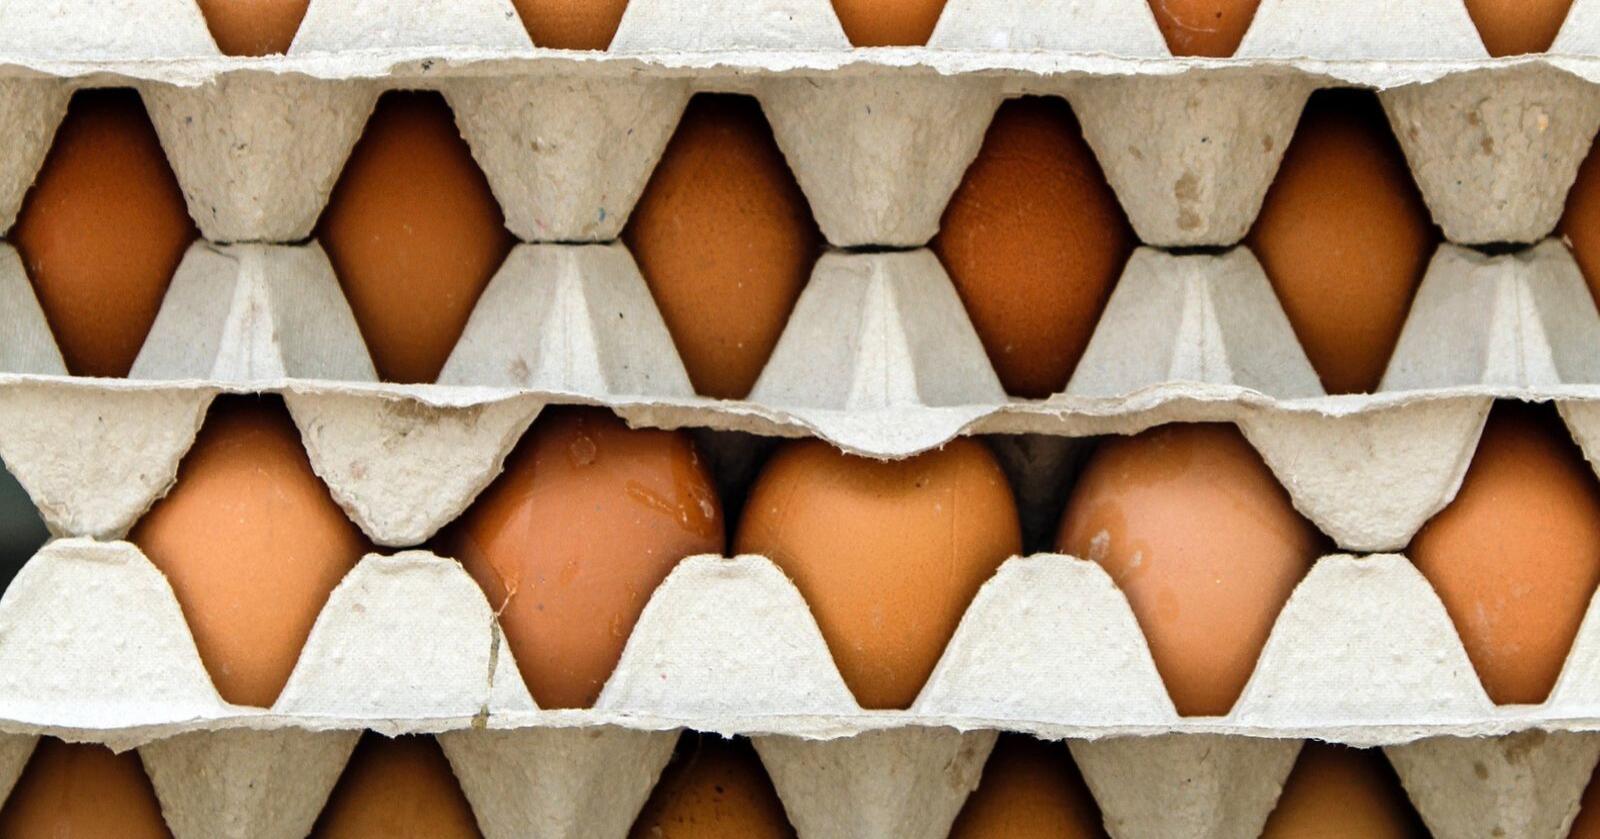 Kastes: Bare i løpet av det siste året har norske eggprodusenter i felleskap måttet betale for ekstremvarianten av markedsregulering; 400 tonn til destruksjon hos Biosirk Norge, skriver kronikøren. Foto: Mostphotos